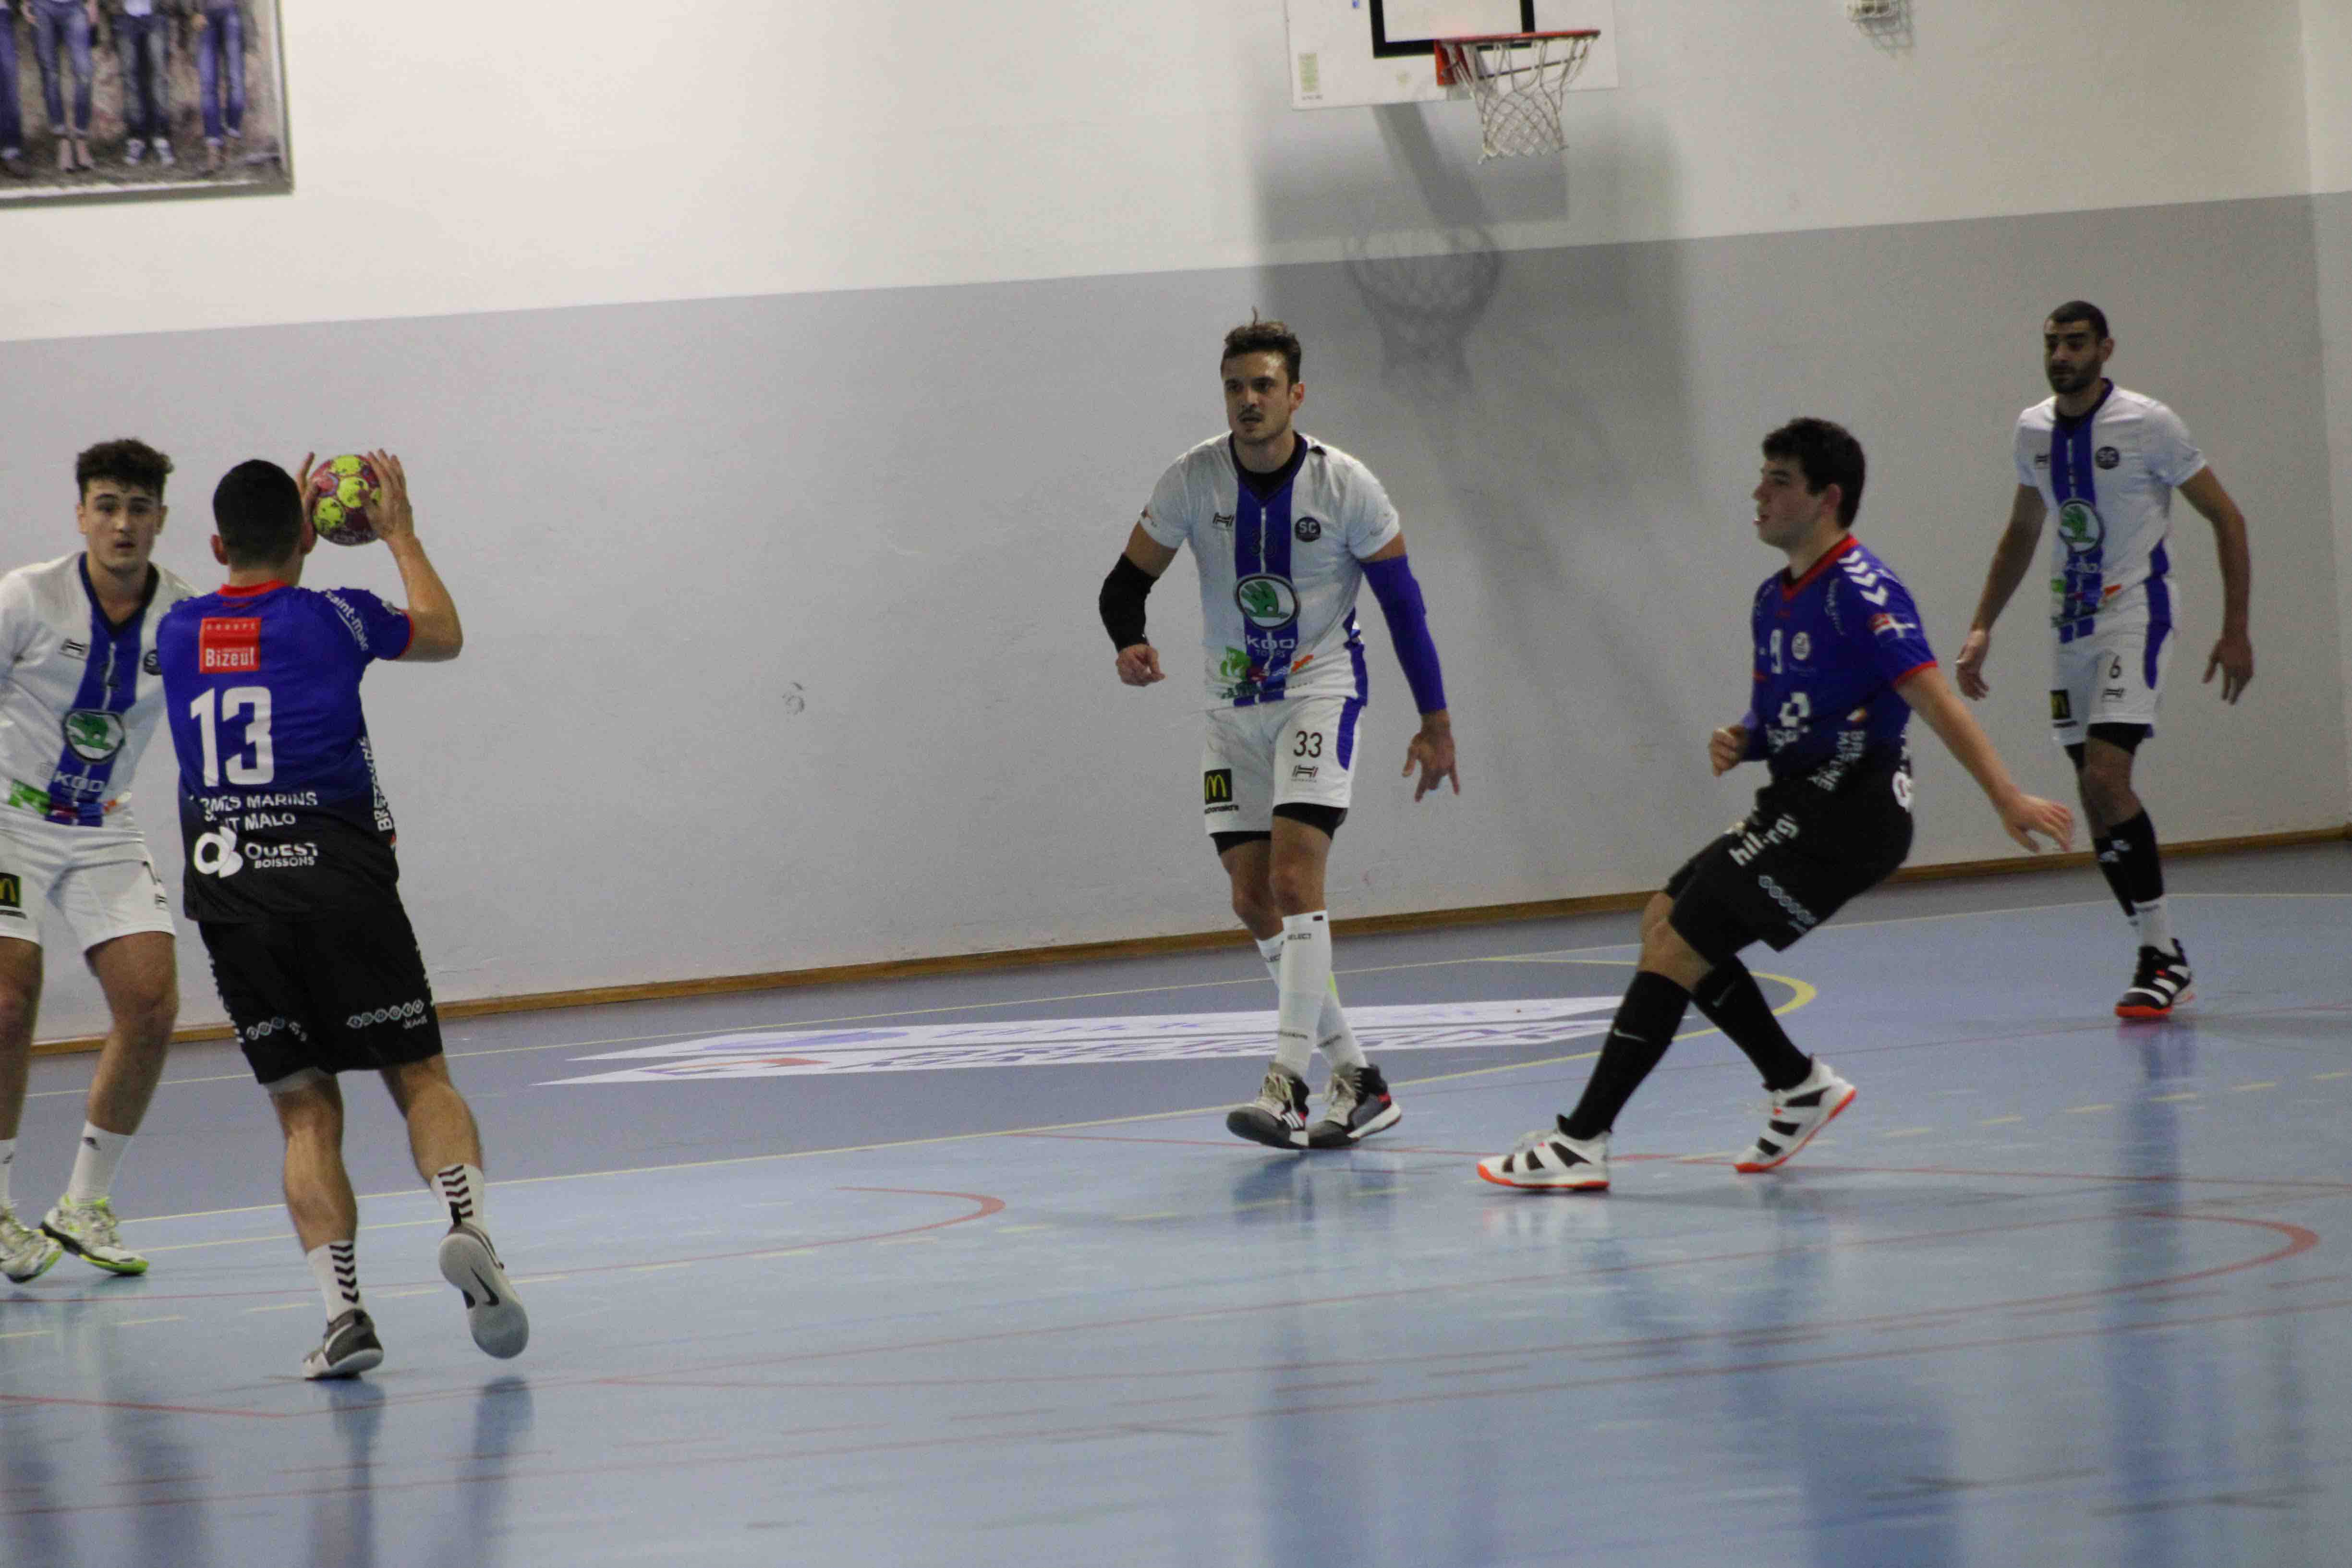 2019nov23 CJF hb _ SC handball (45)